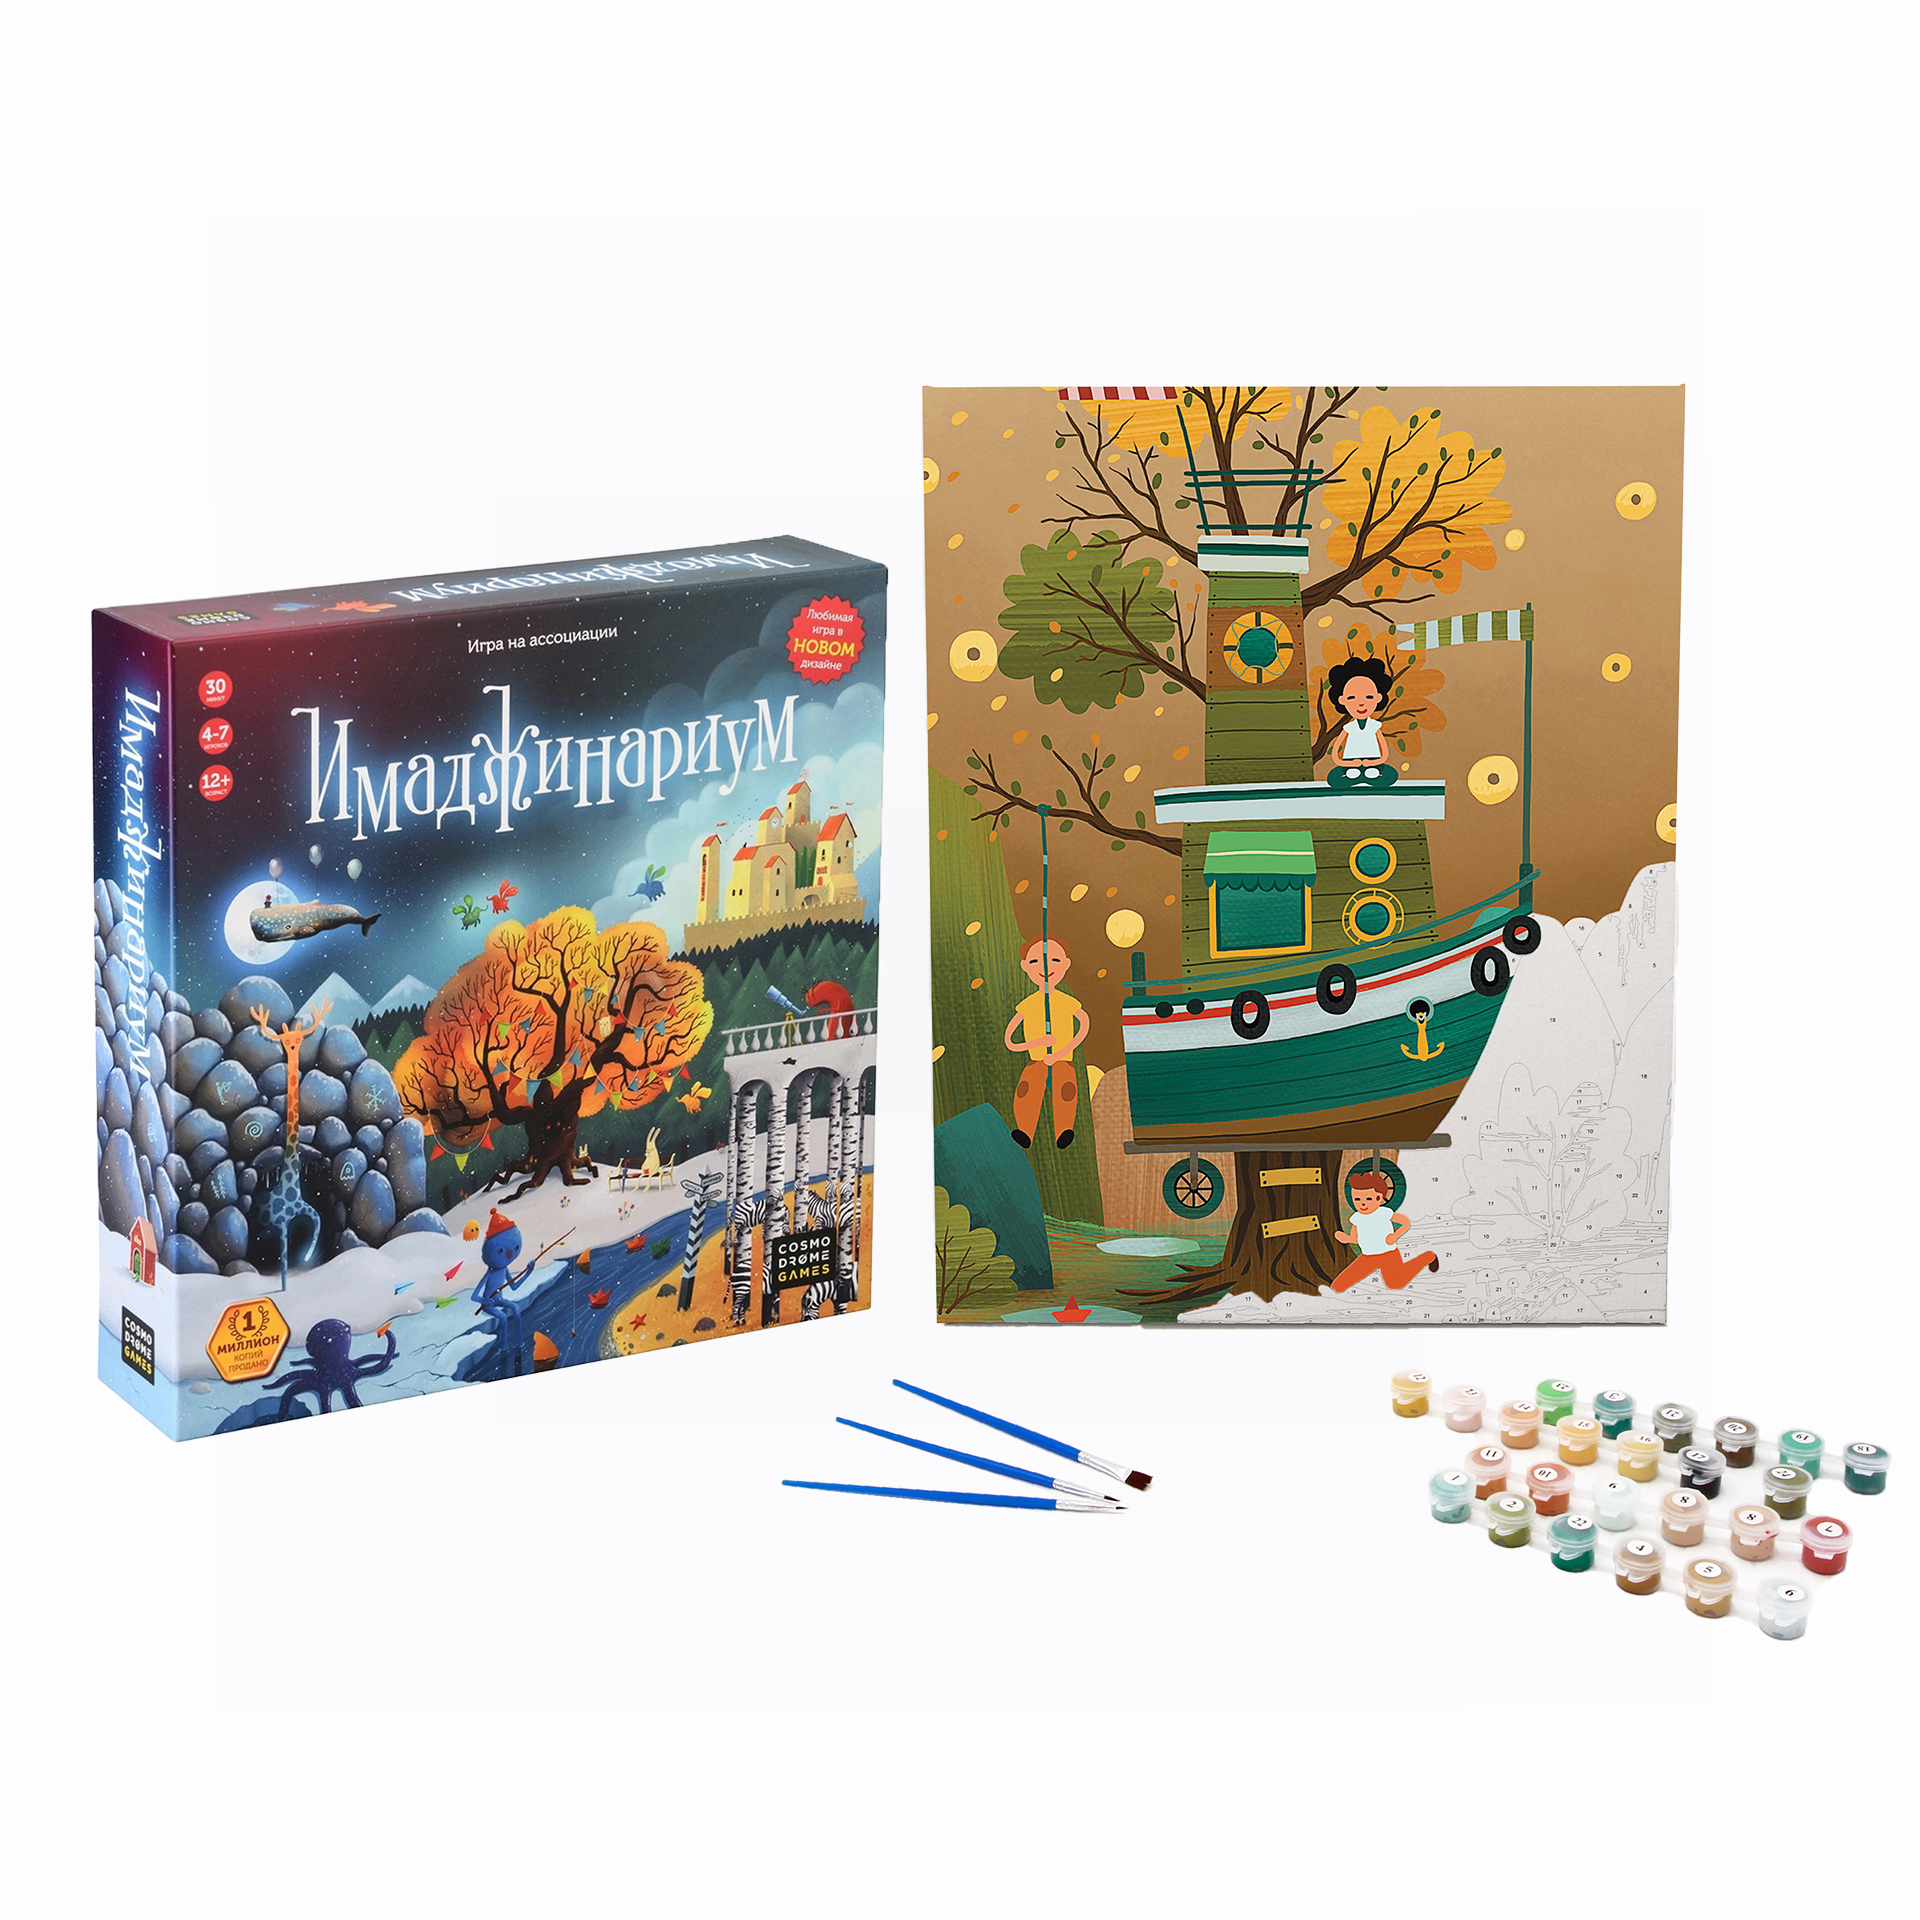 Набор Cosmodrome Games Настольная игра Имаджинариум и Картина по номерам, Домик на дереве